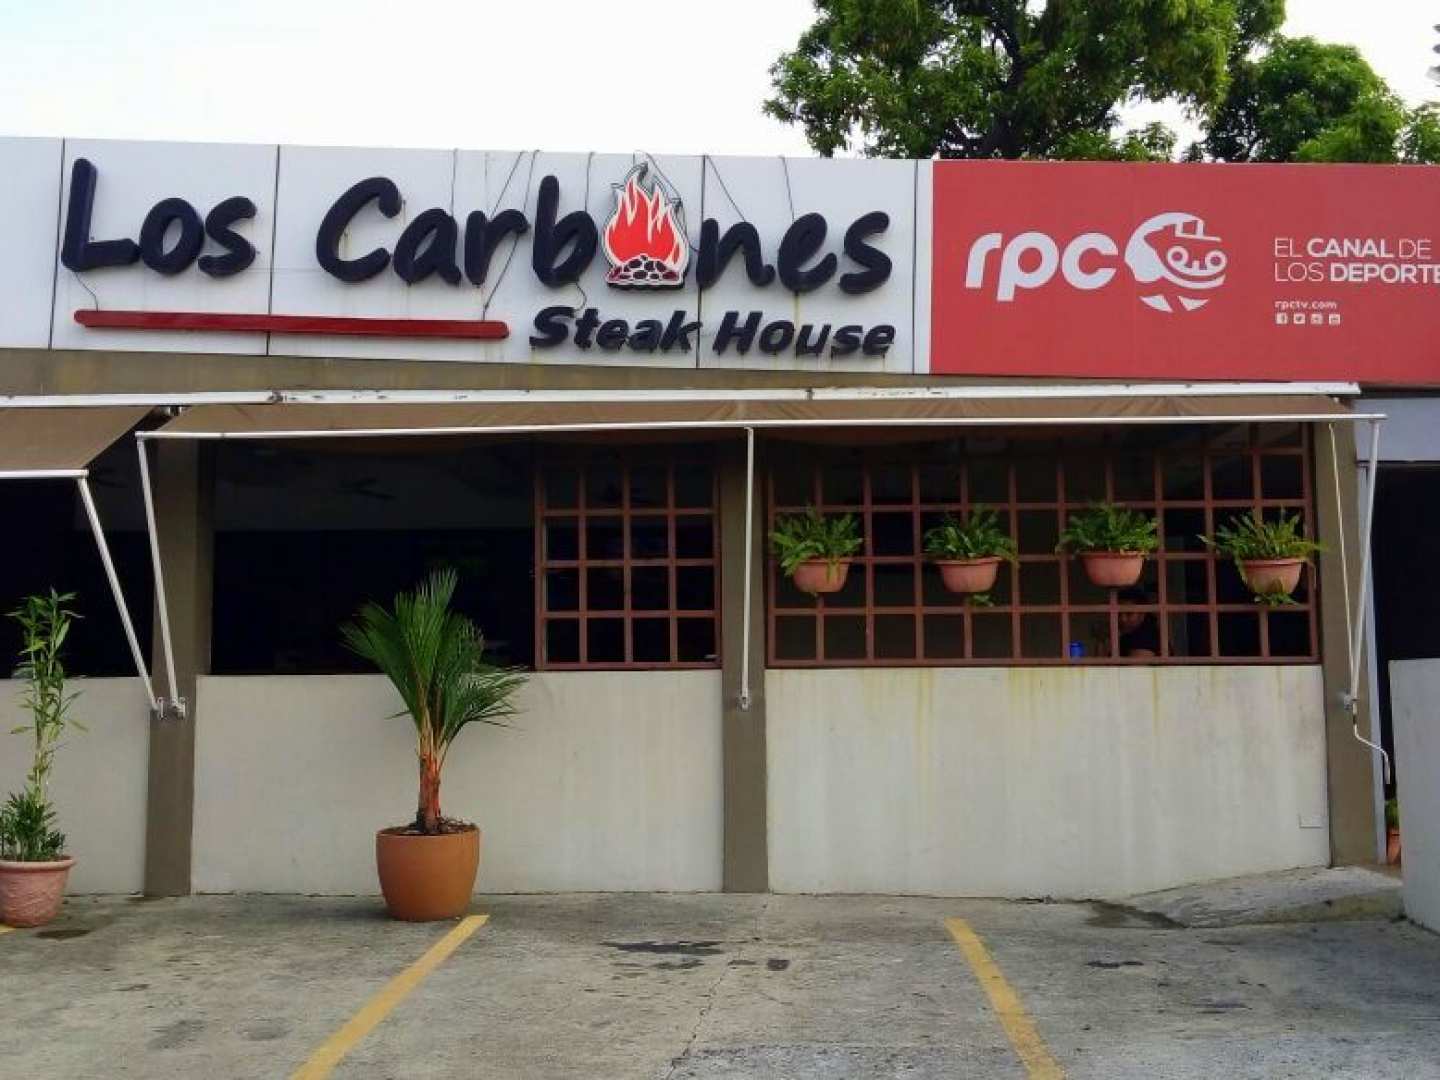 Los Carbones Steak House